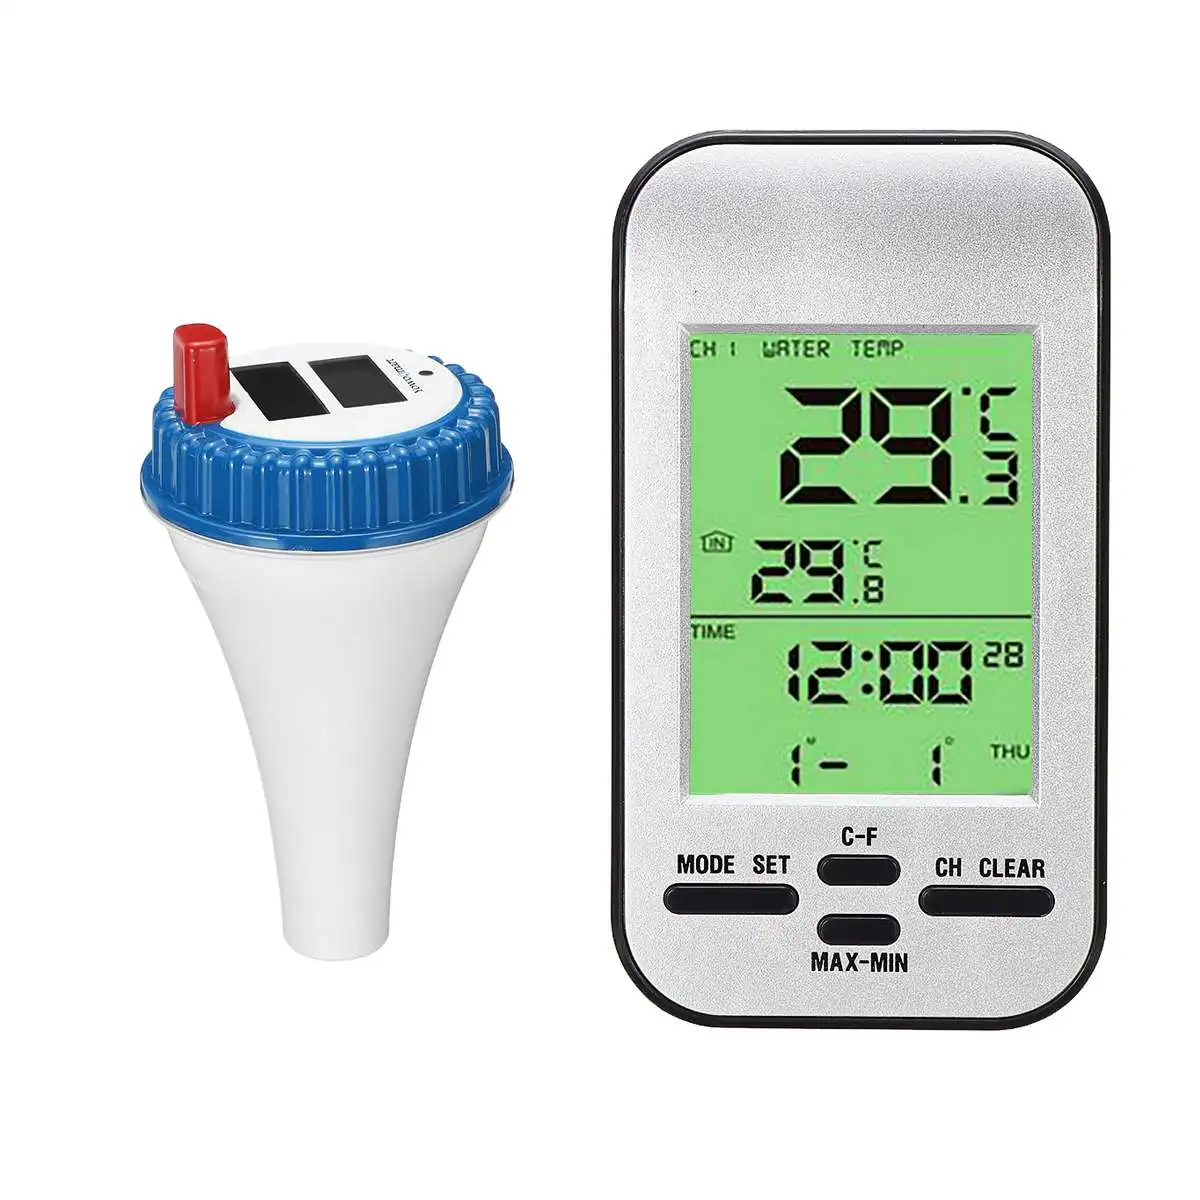 Беспроводной термометр для плавательного бассейна, датчик температуры воды, календарь времени, ЖК-дисплей, водонепроницаемый внешний датчик